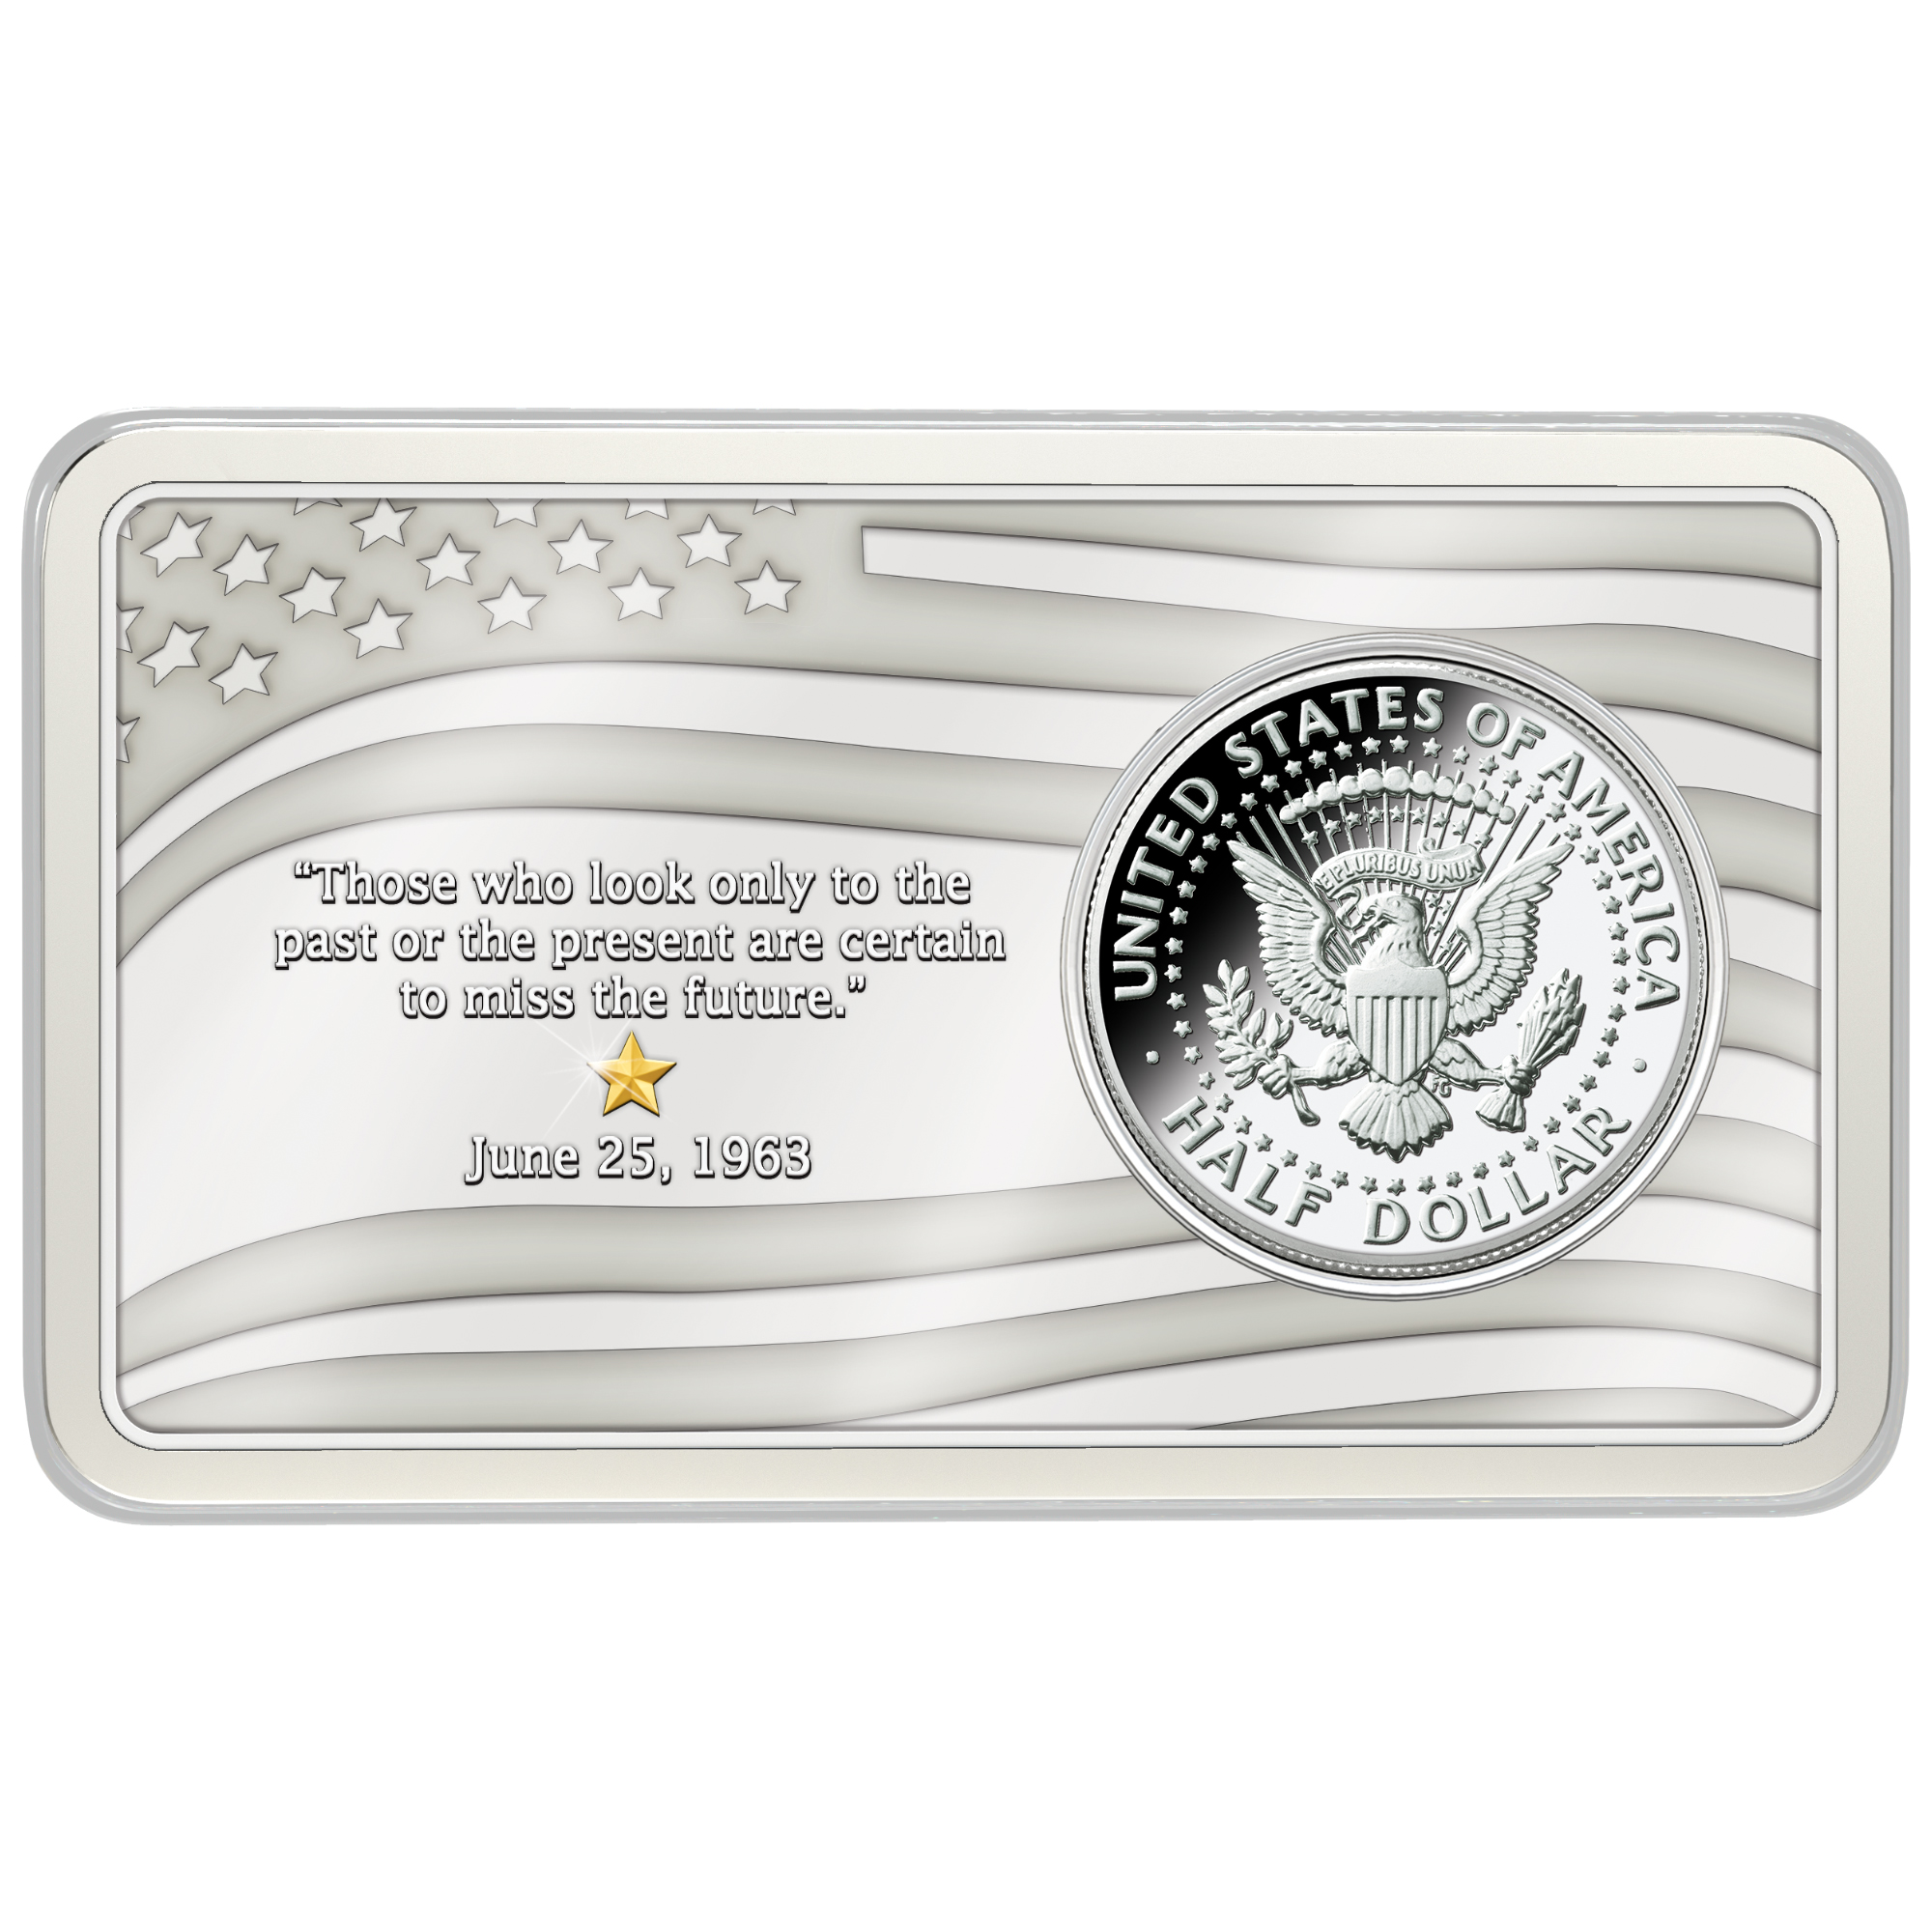 The Kennedy Silver Half Dollar Inaugural Year Mint Mark Set 10646 0017 a display